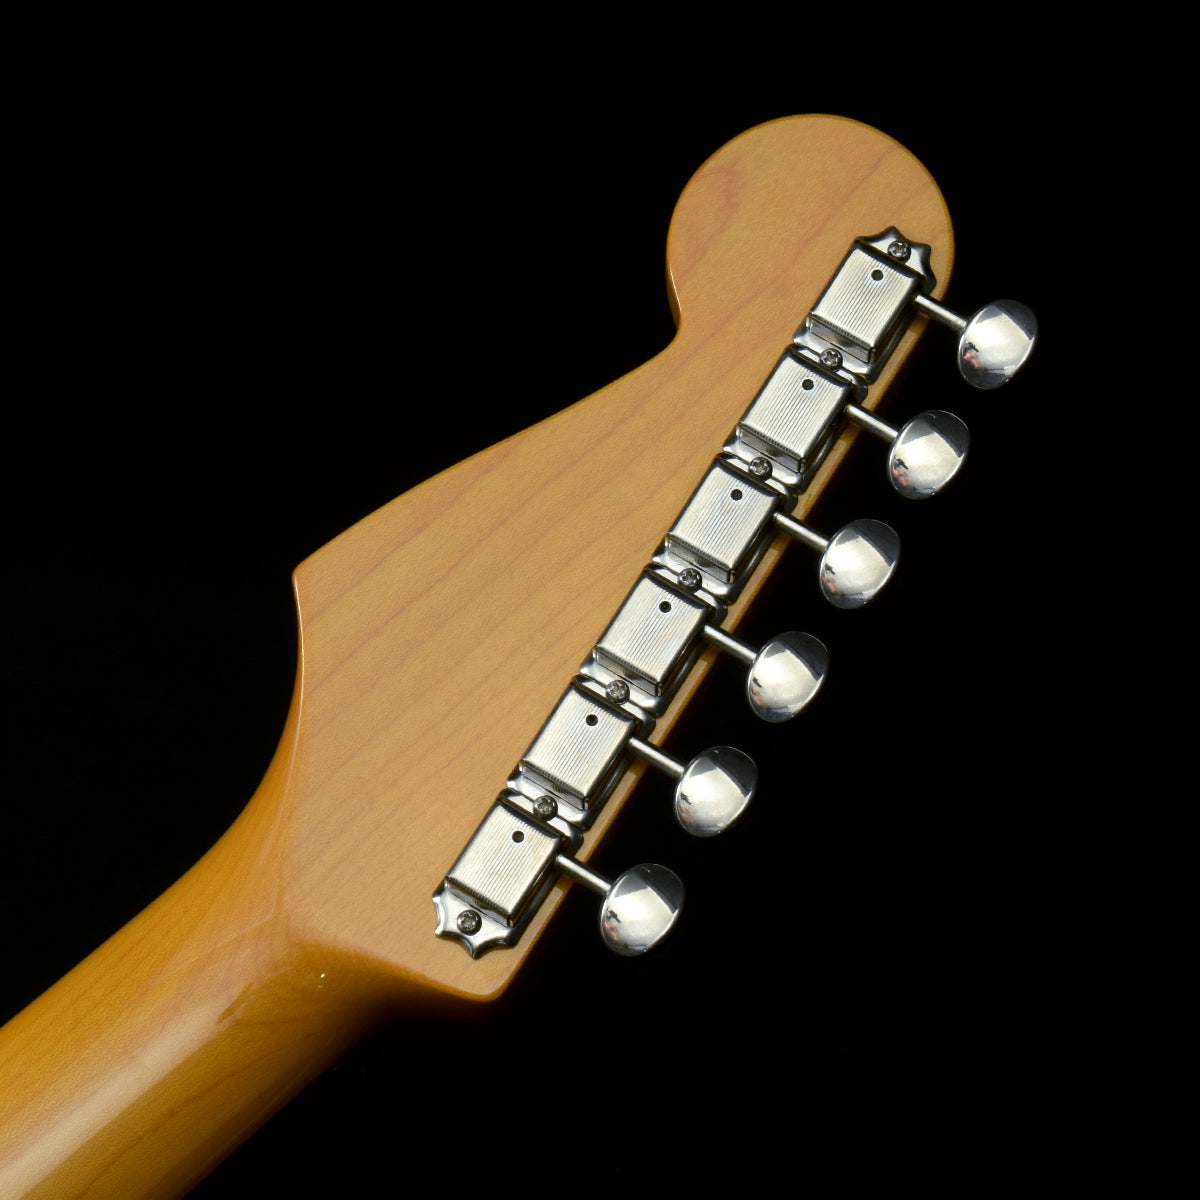 [SN JD13012141] USED Fender Japan Fender Japan / ST62-TX 3tone Sunburst [20]